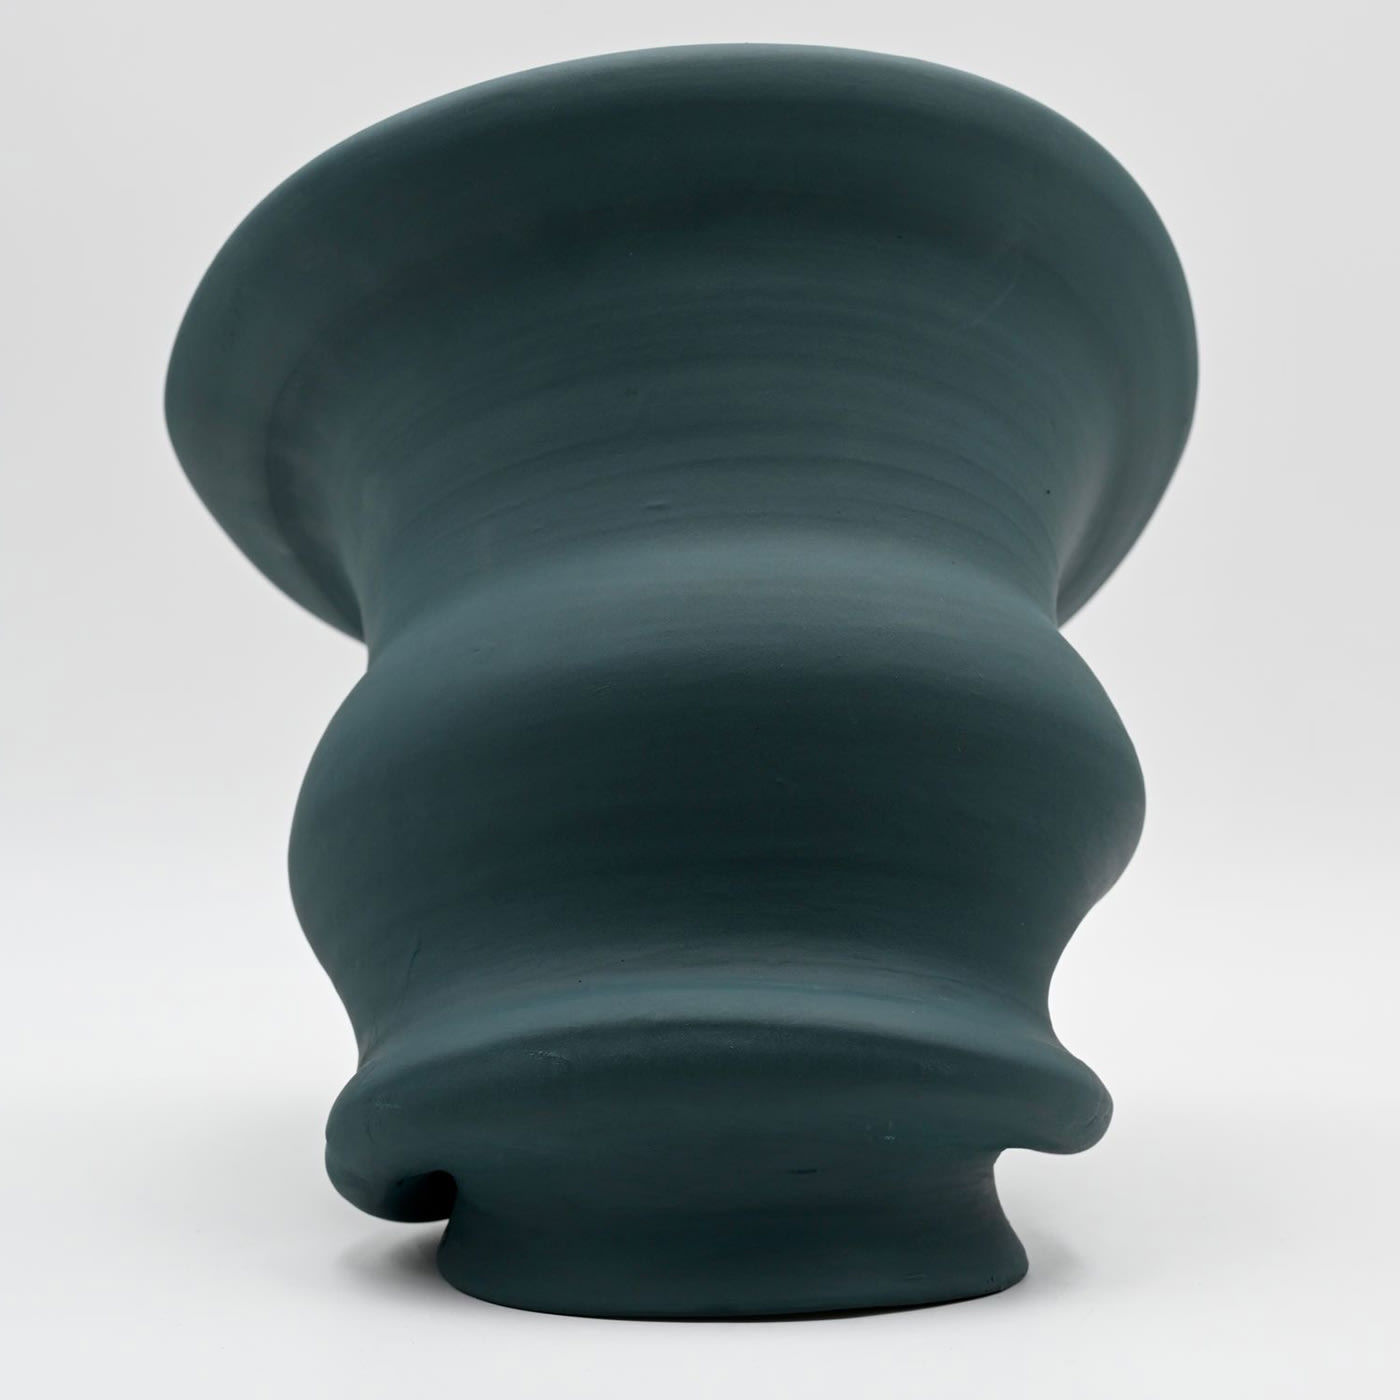 Green Vase #1 - Ovo - Idee e Manufatti